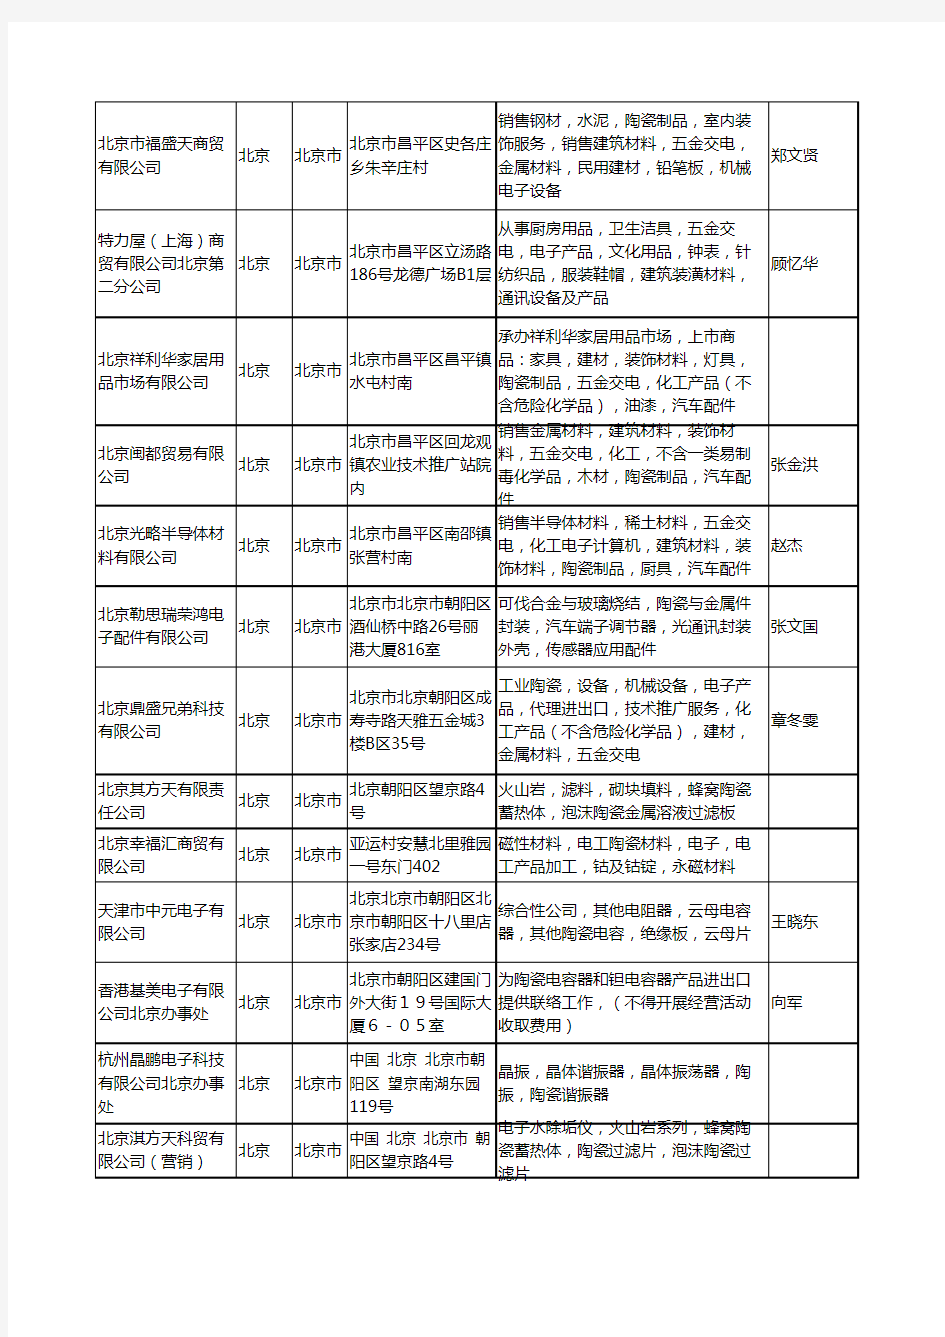 2020新版北京市电子陶瓷工商企业公司名录名单黄页大全259家